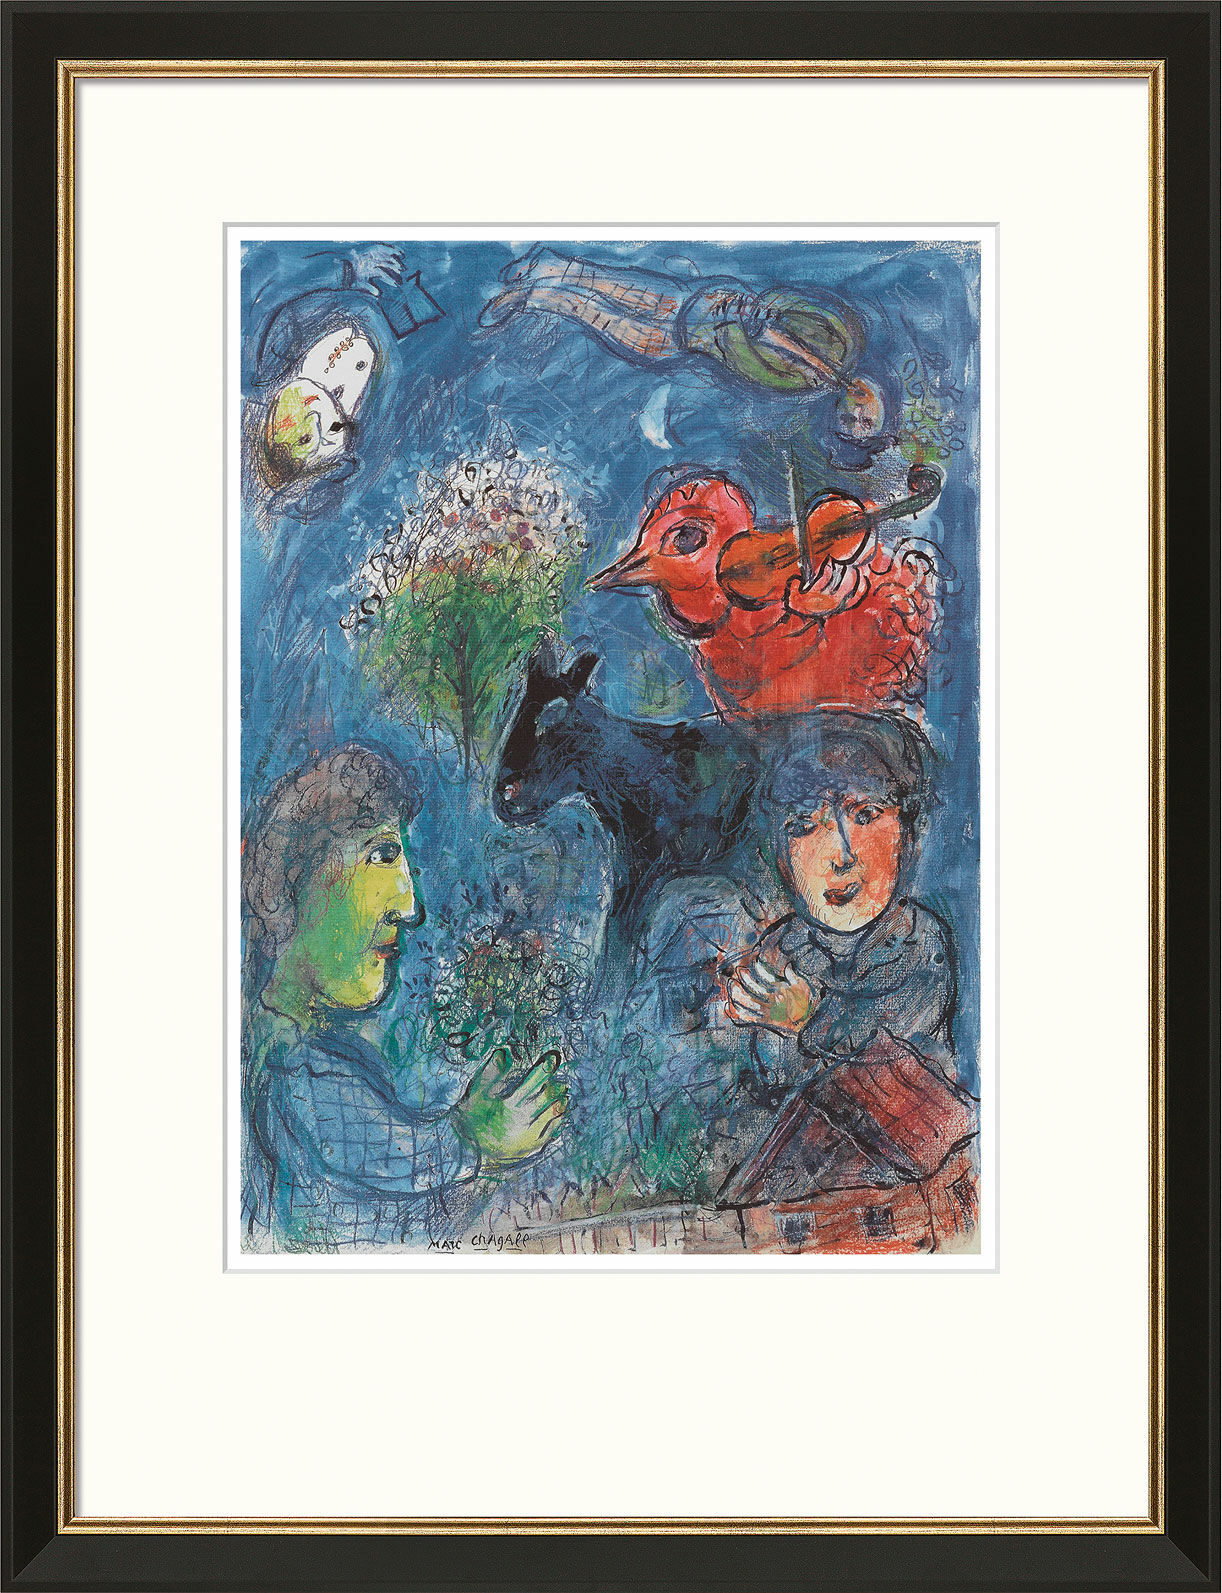 Beeld "L'été", ingelijst von Marc Chagall